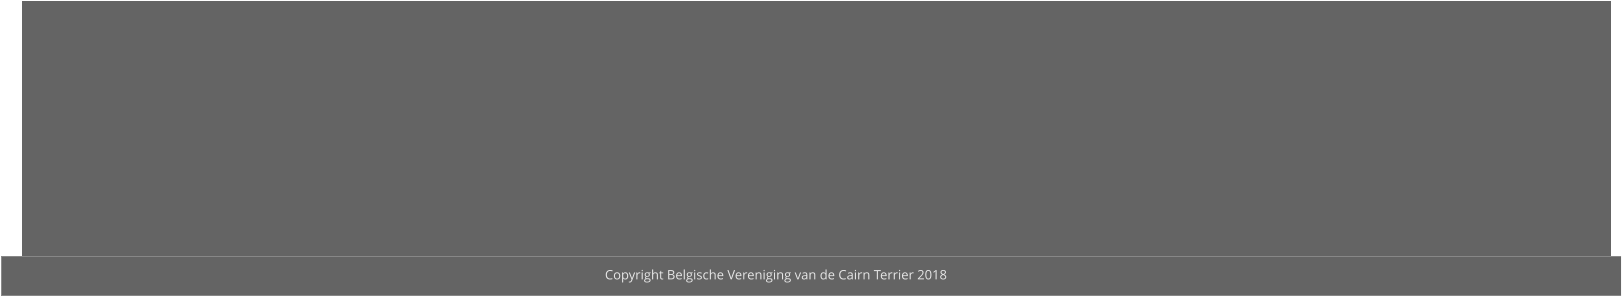 Copyright Belgische Vereniging van de Cairn Terrier 2018